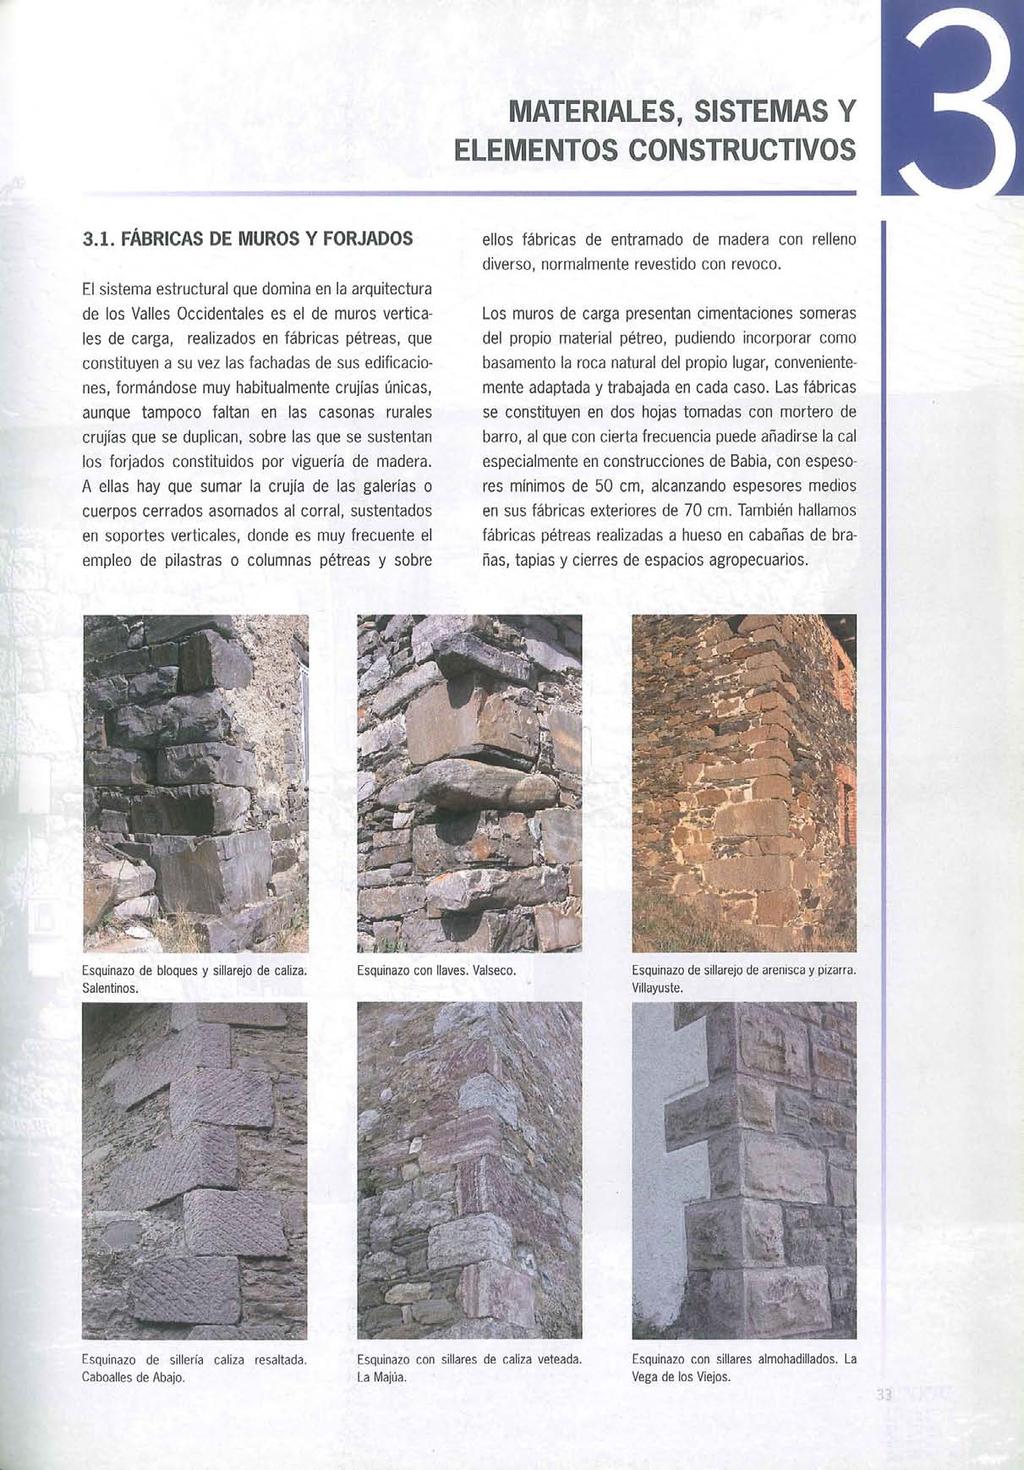 3.1. FÁBRICAS DE MUROS Y FORJADOS El sistema estructural que domina en la arquitectura de los Valles Occidentales es el de muros verticales de carga, realizados en fábricas pétreas, que constituyen a